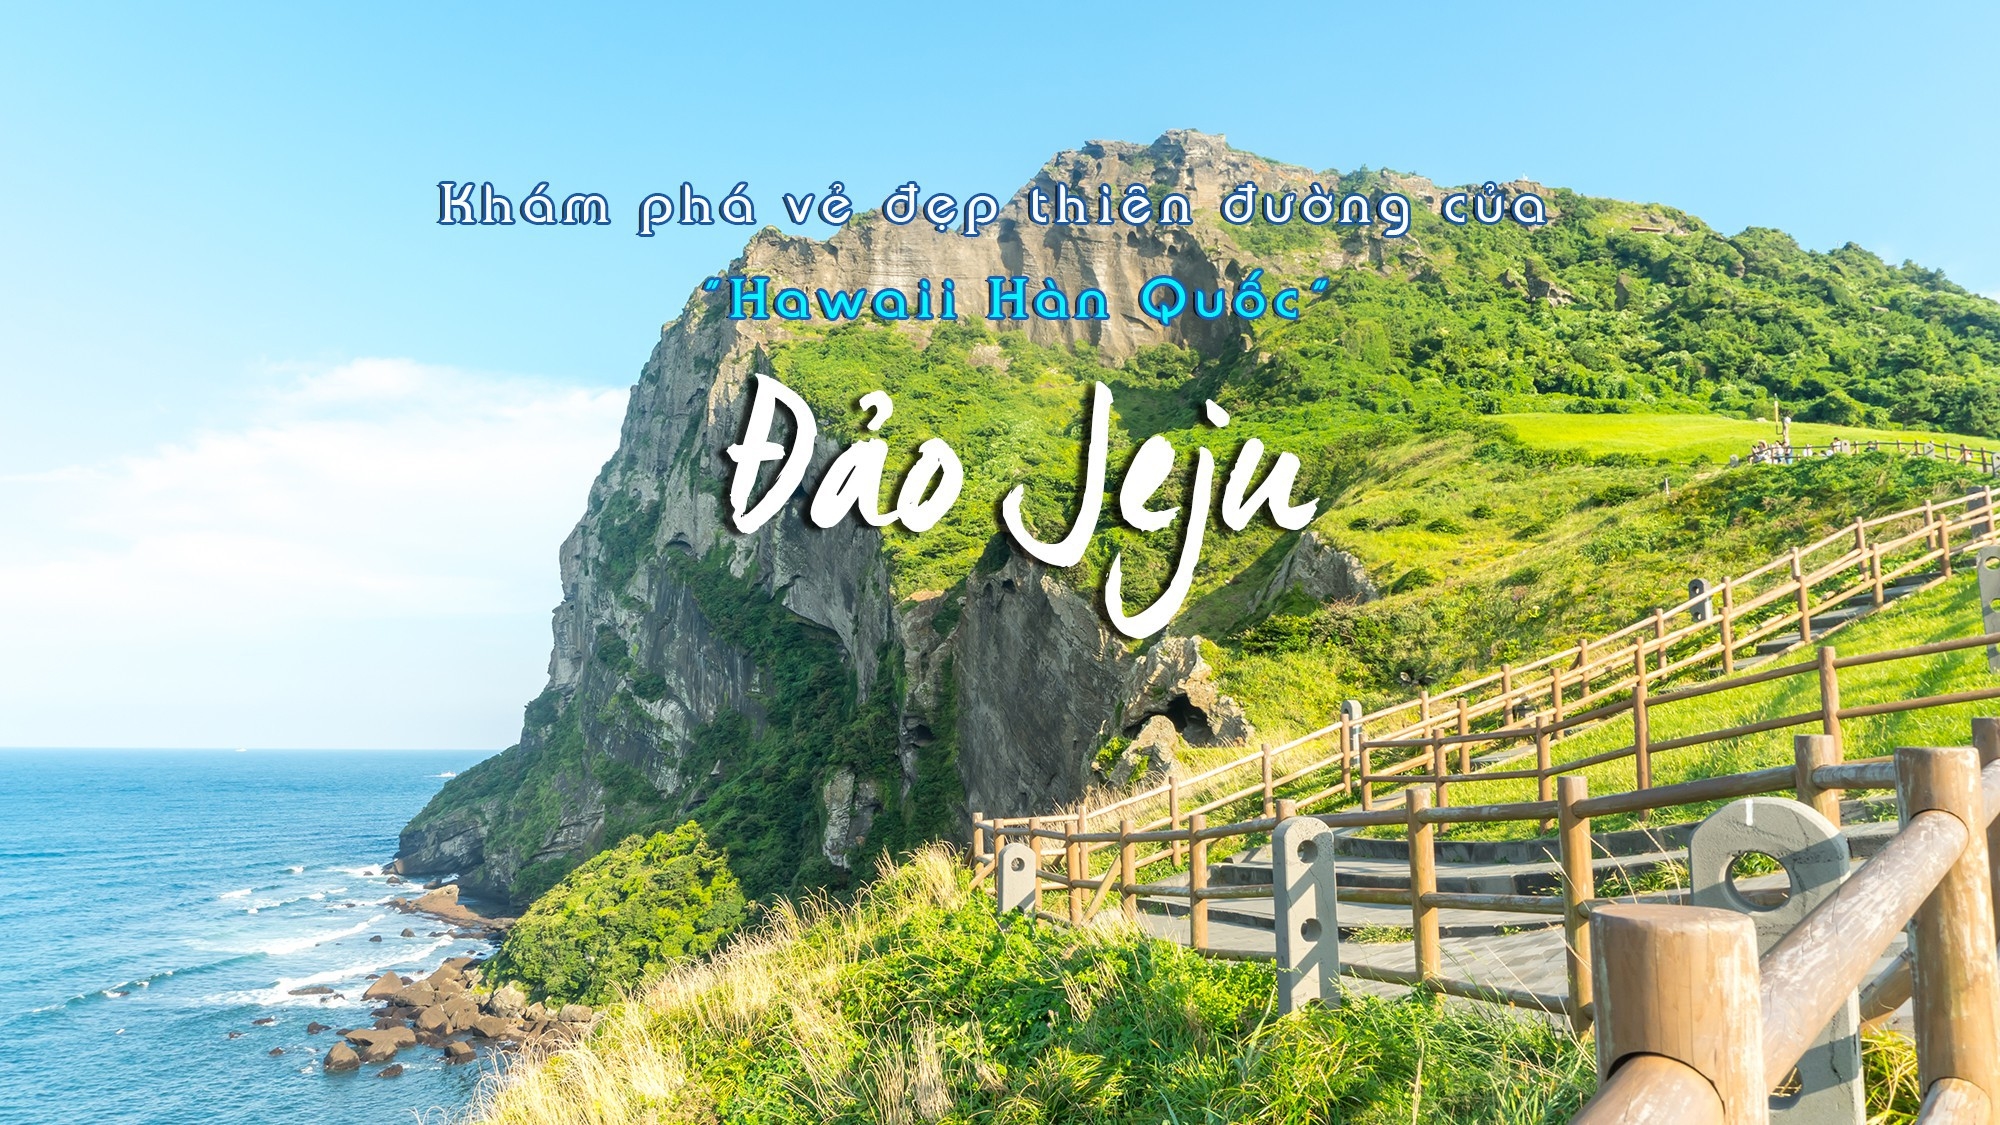 Du lịch Hàn Quốc - Vi vu đảo thiên đường JEJU - Miễn visa - KH Đà Nẵng 6N5Đ